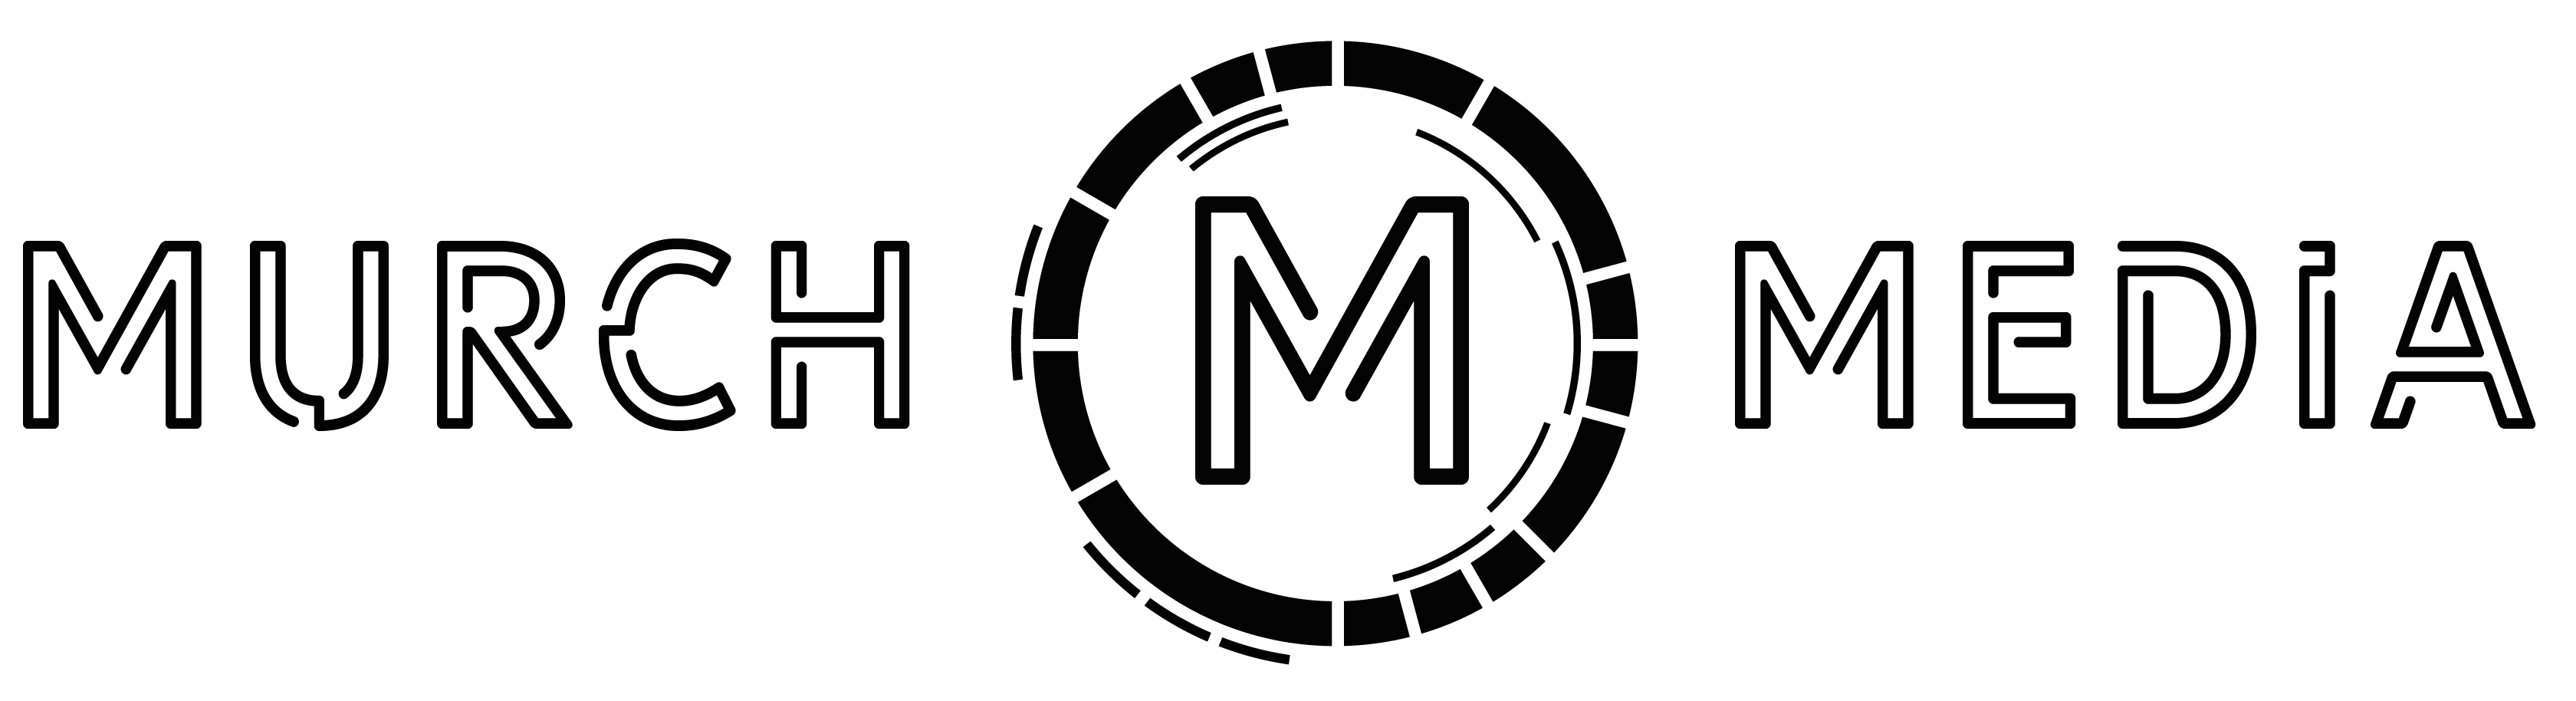 Murch Media